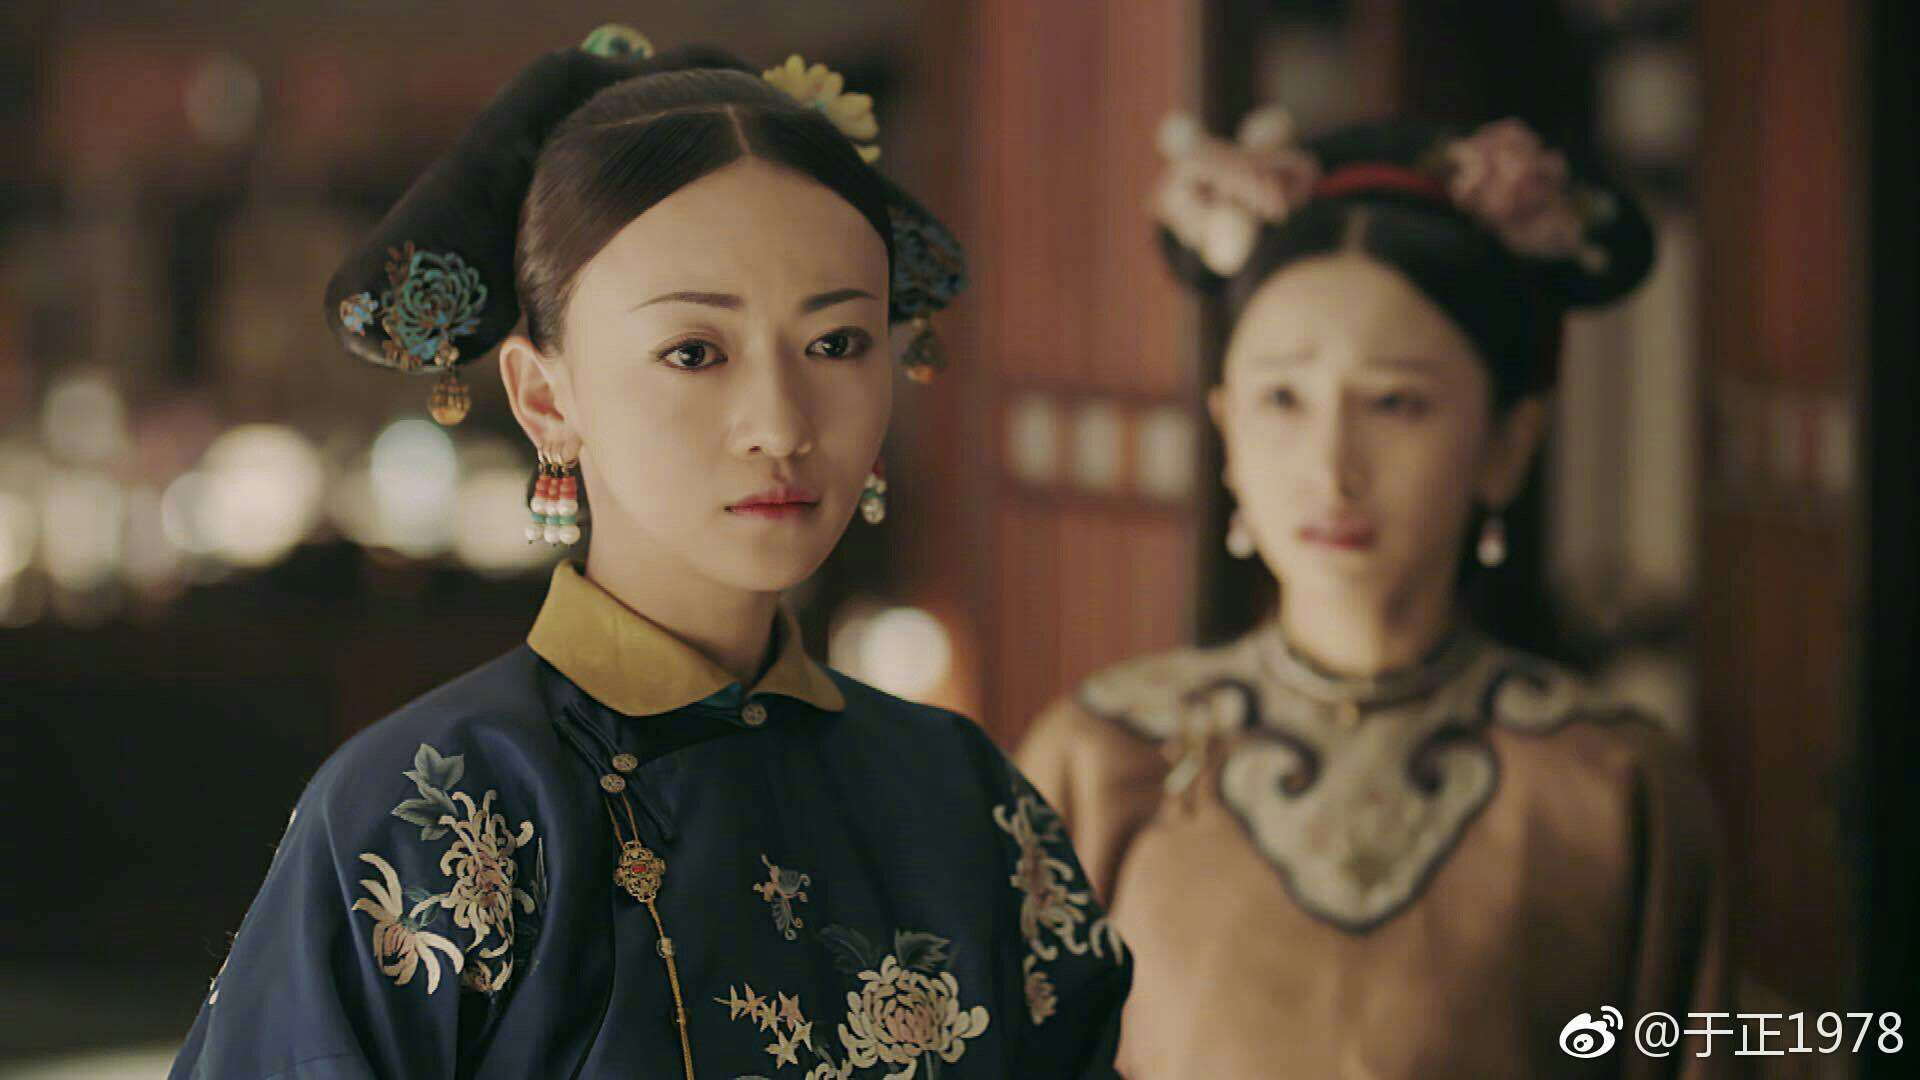 4 nữ chính bị ghét nhất màn ảnh Châu Á hiện tại: Cô Linh (Tình Yêu Và Tham Vọng) vẫn chưa là gì so với mẹ vợ Dục Vọng Tình Yêu - Ảnh 8.